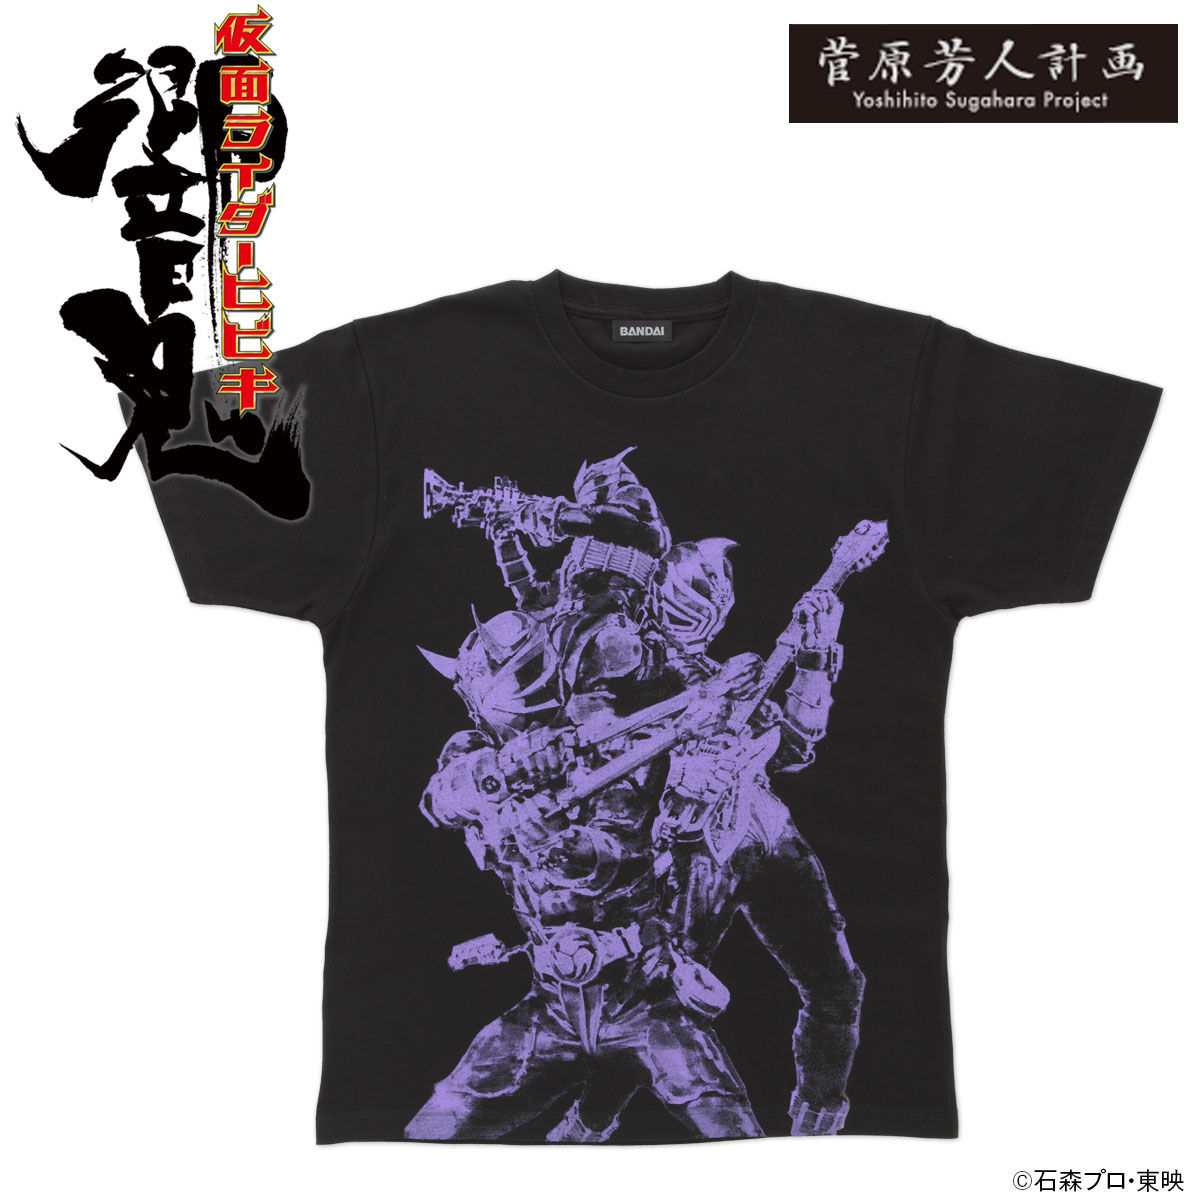 Sugahara Yoshihito Project Kamen Rider Hibiki T-Shirt (Kanto three demons)